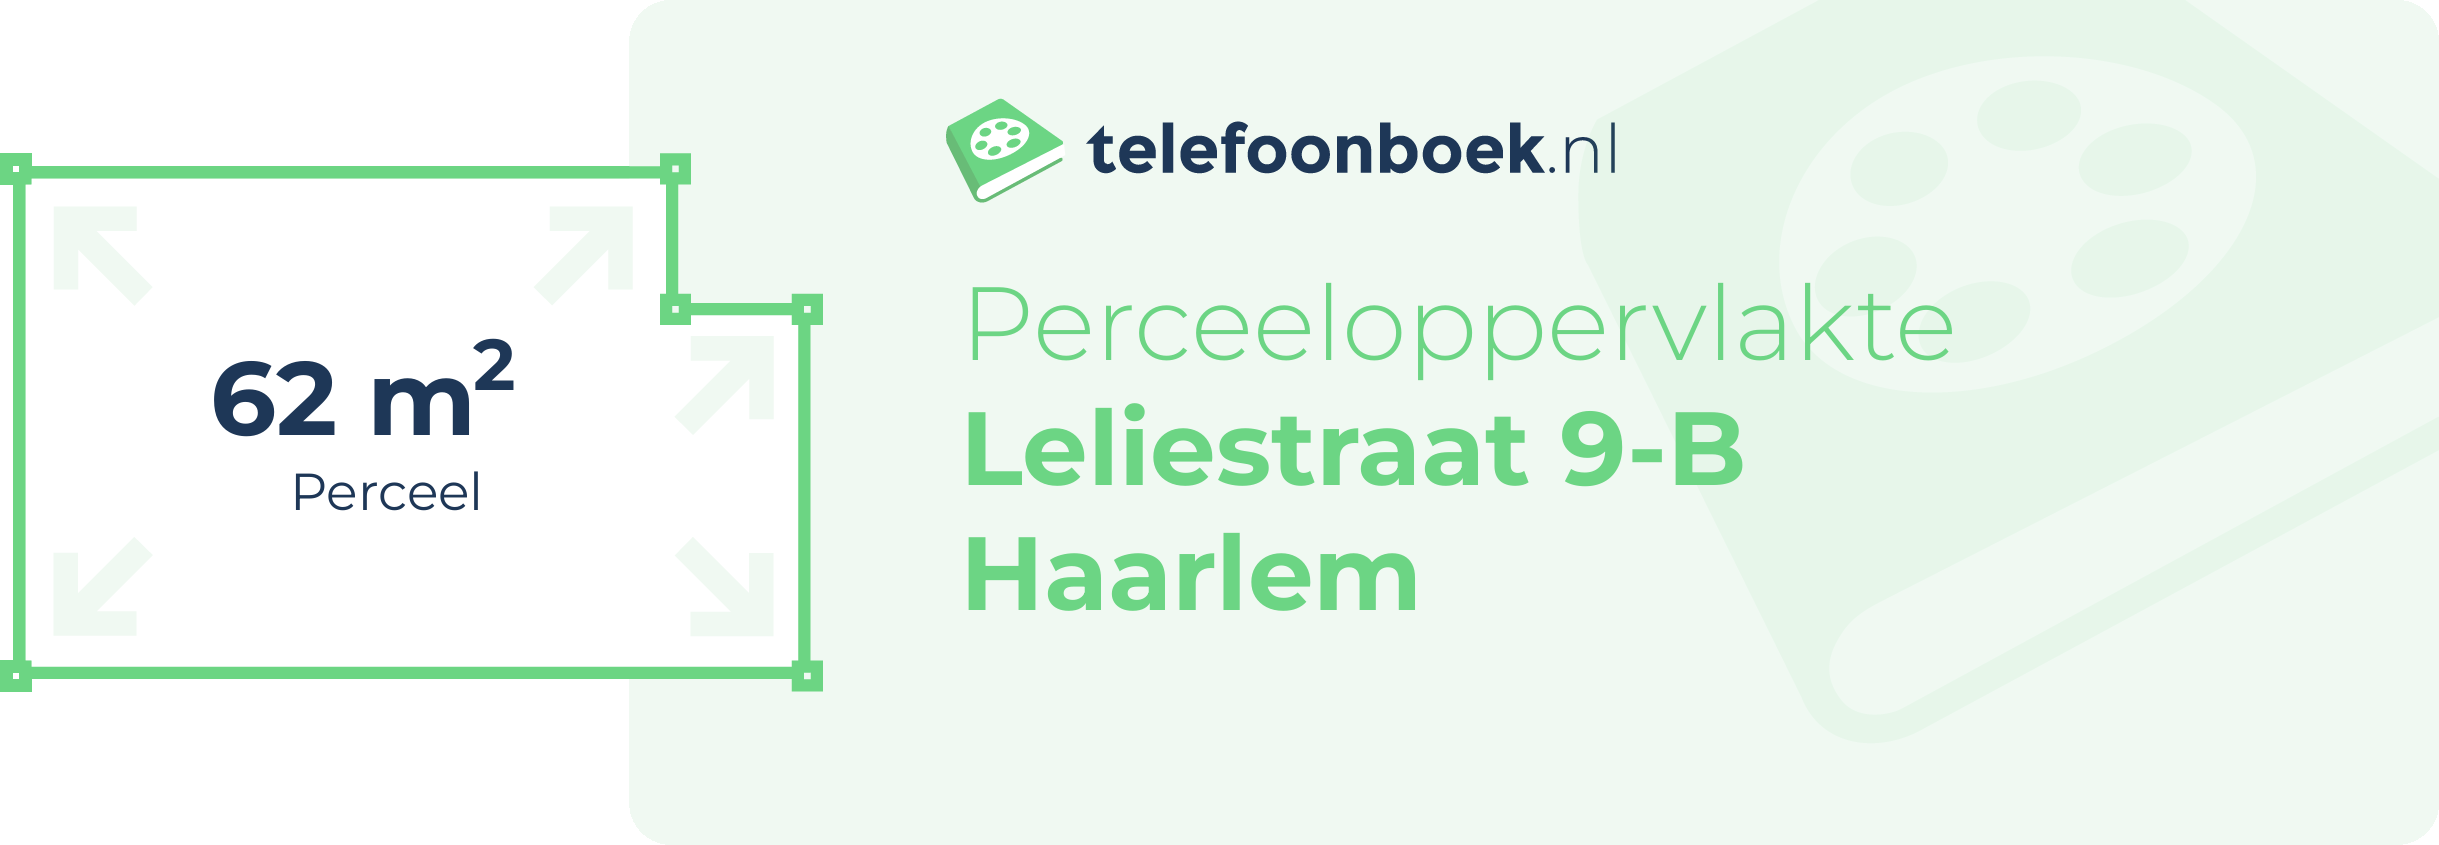 Perceeloppervlakte Leliestraat 9-B Haarlem